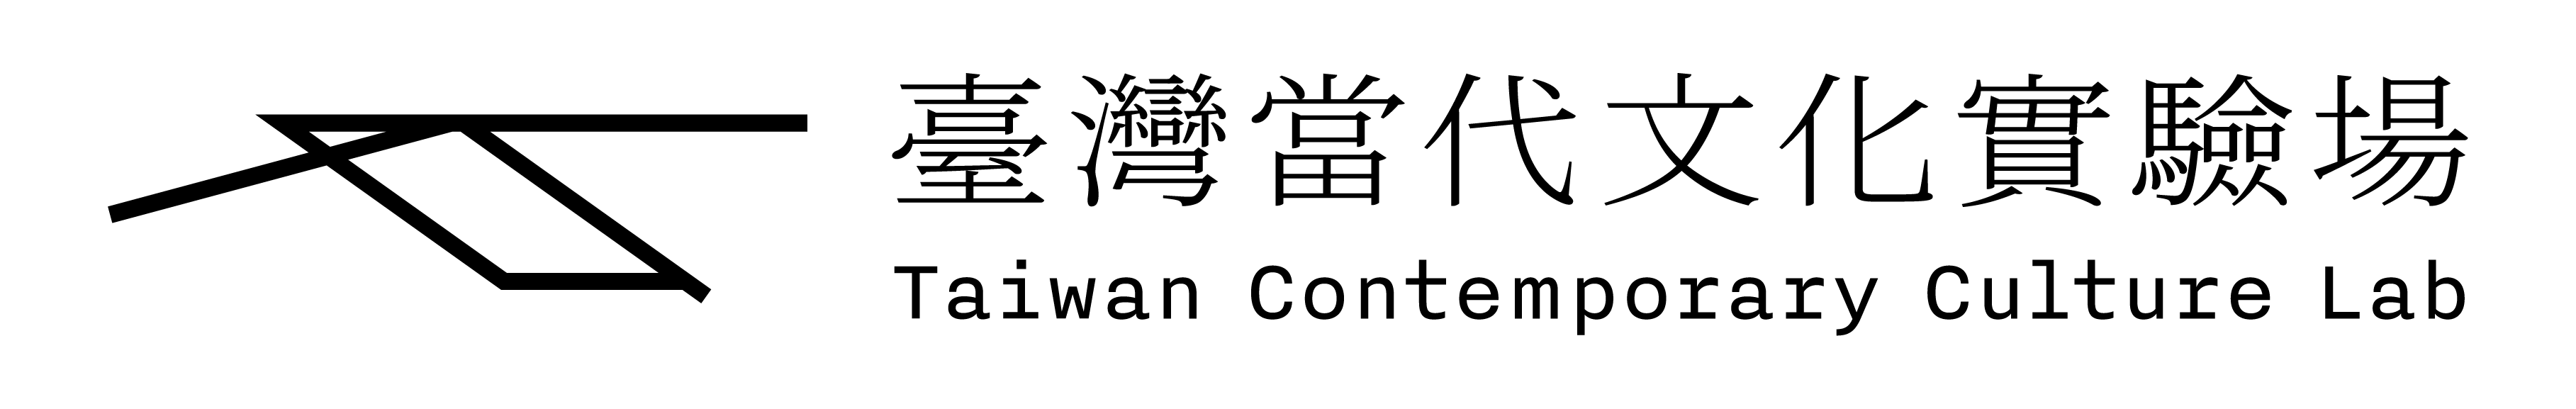 臺灣當代文化實驗場Logo